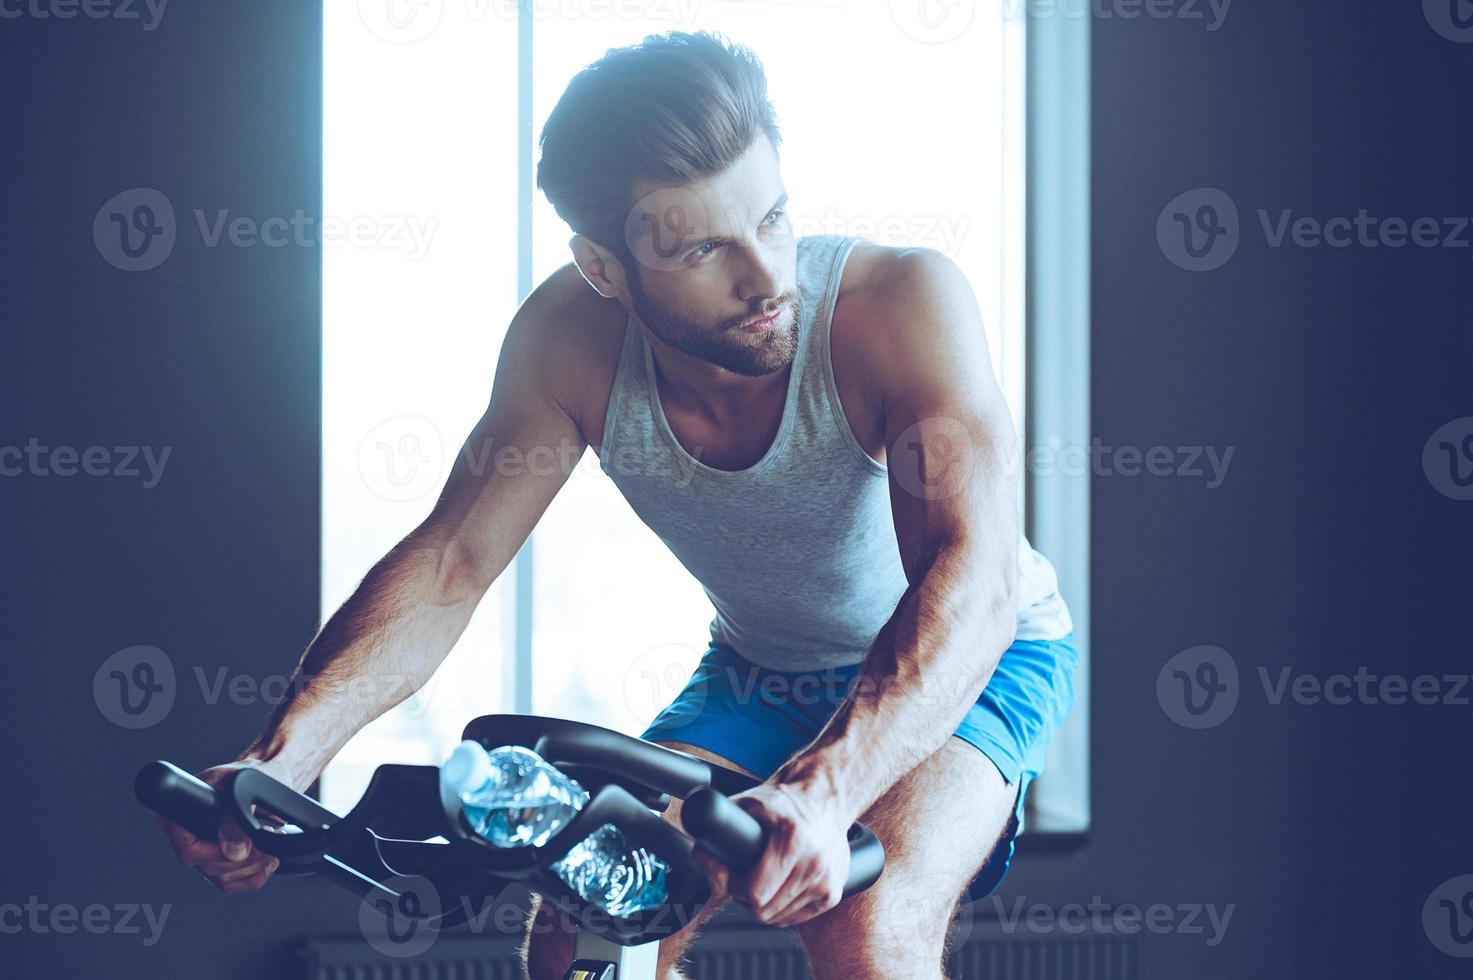 ciclismo duro. joven apuesto en ropa deportiva mirando hacia otro lado mientras anda en bicicleta en el gimnasio foto